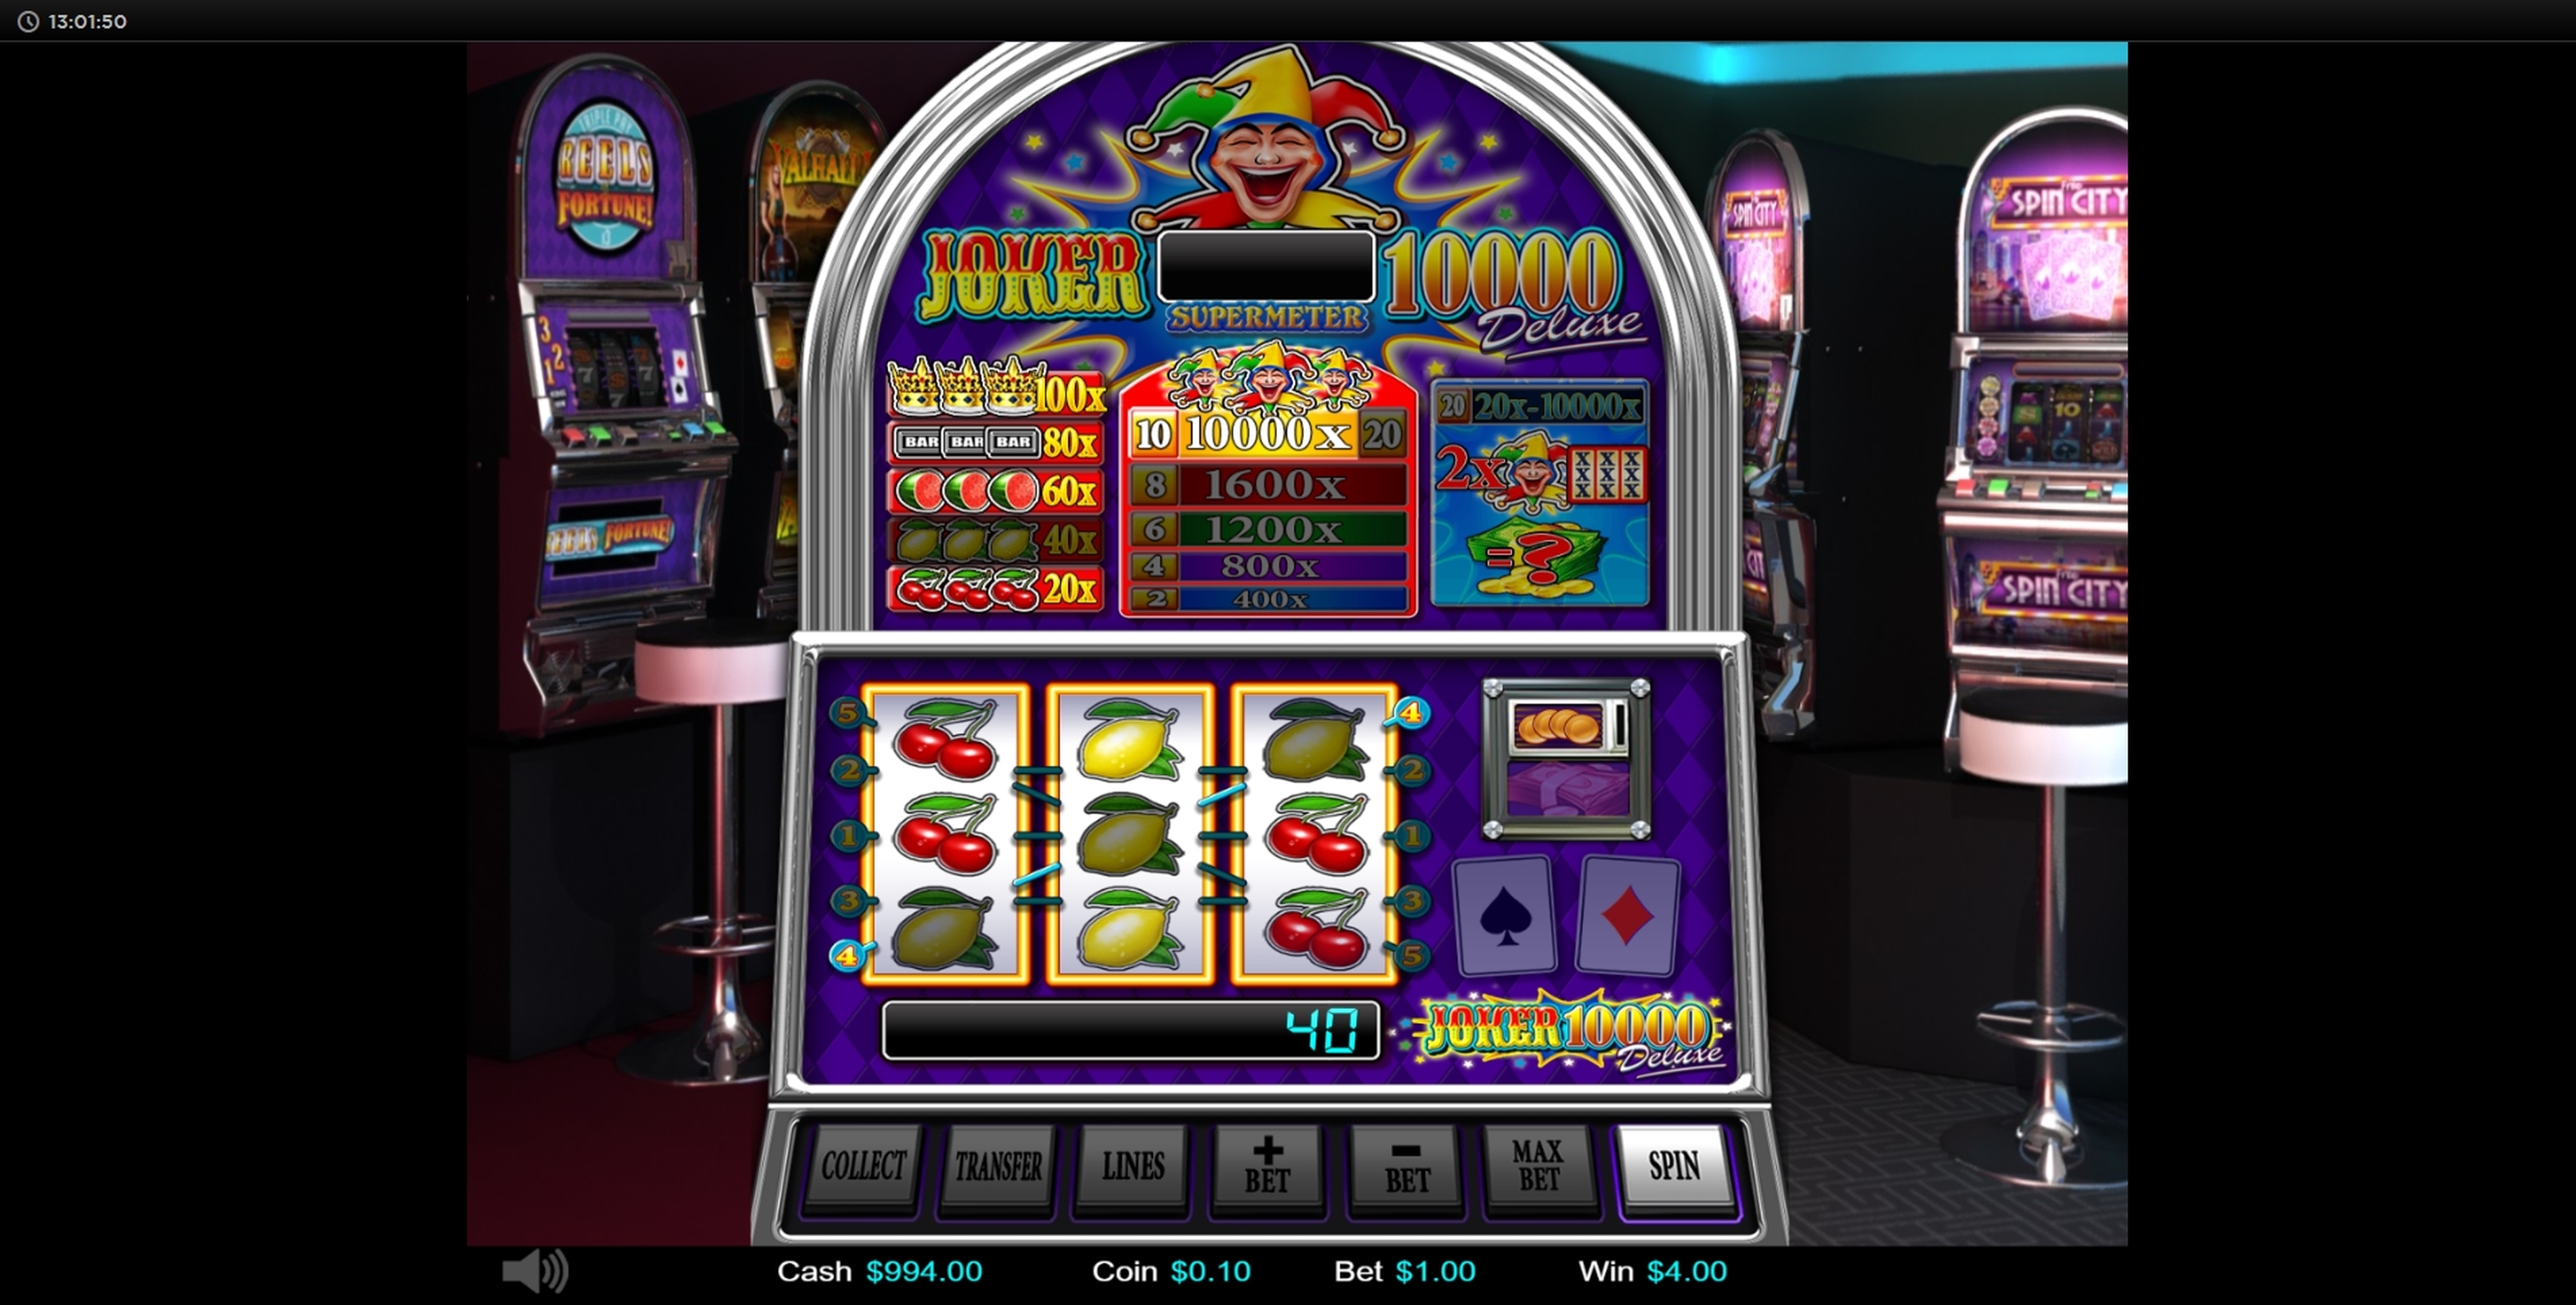 Win Money in JOKER 10000 DELUXE Free Slot Game by Betdigital